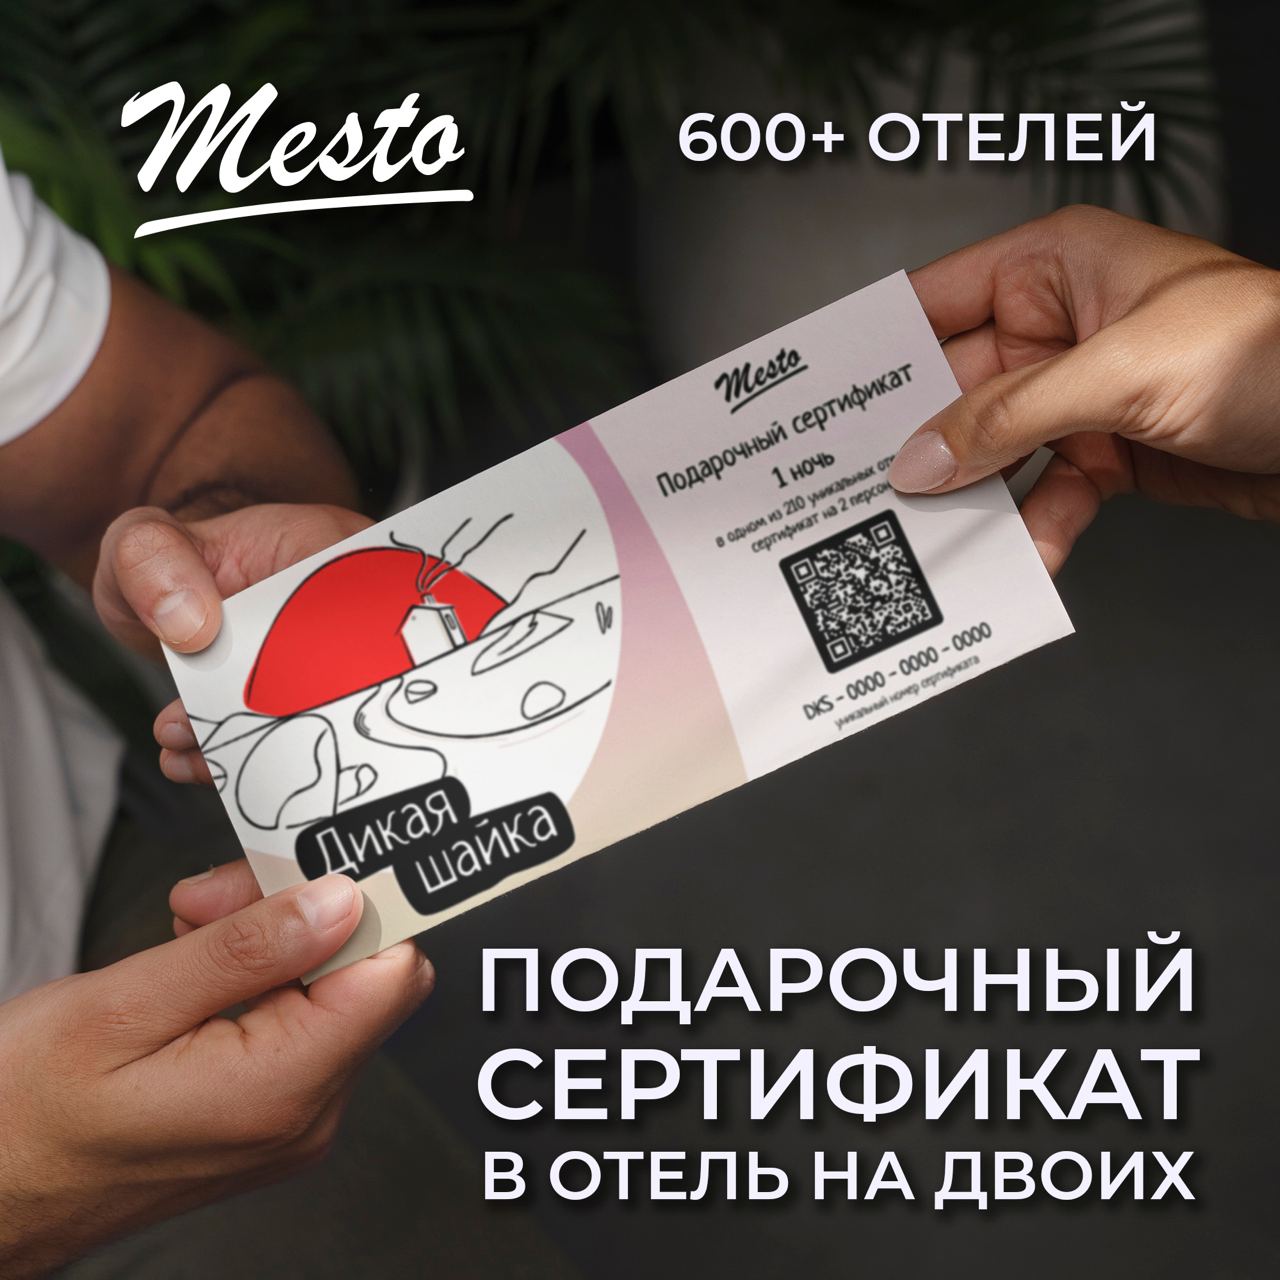 Подарочный сертификат Место в уникальные отели Дикая шайка DKS-1001, 1 ночь